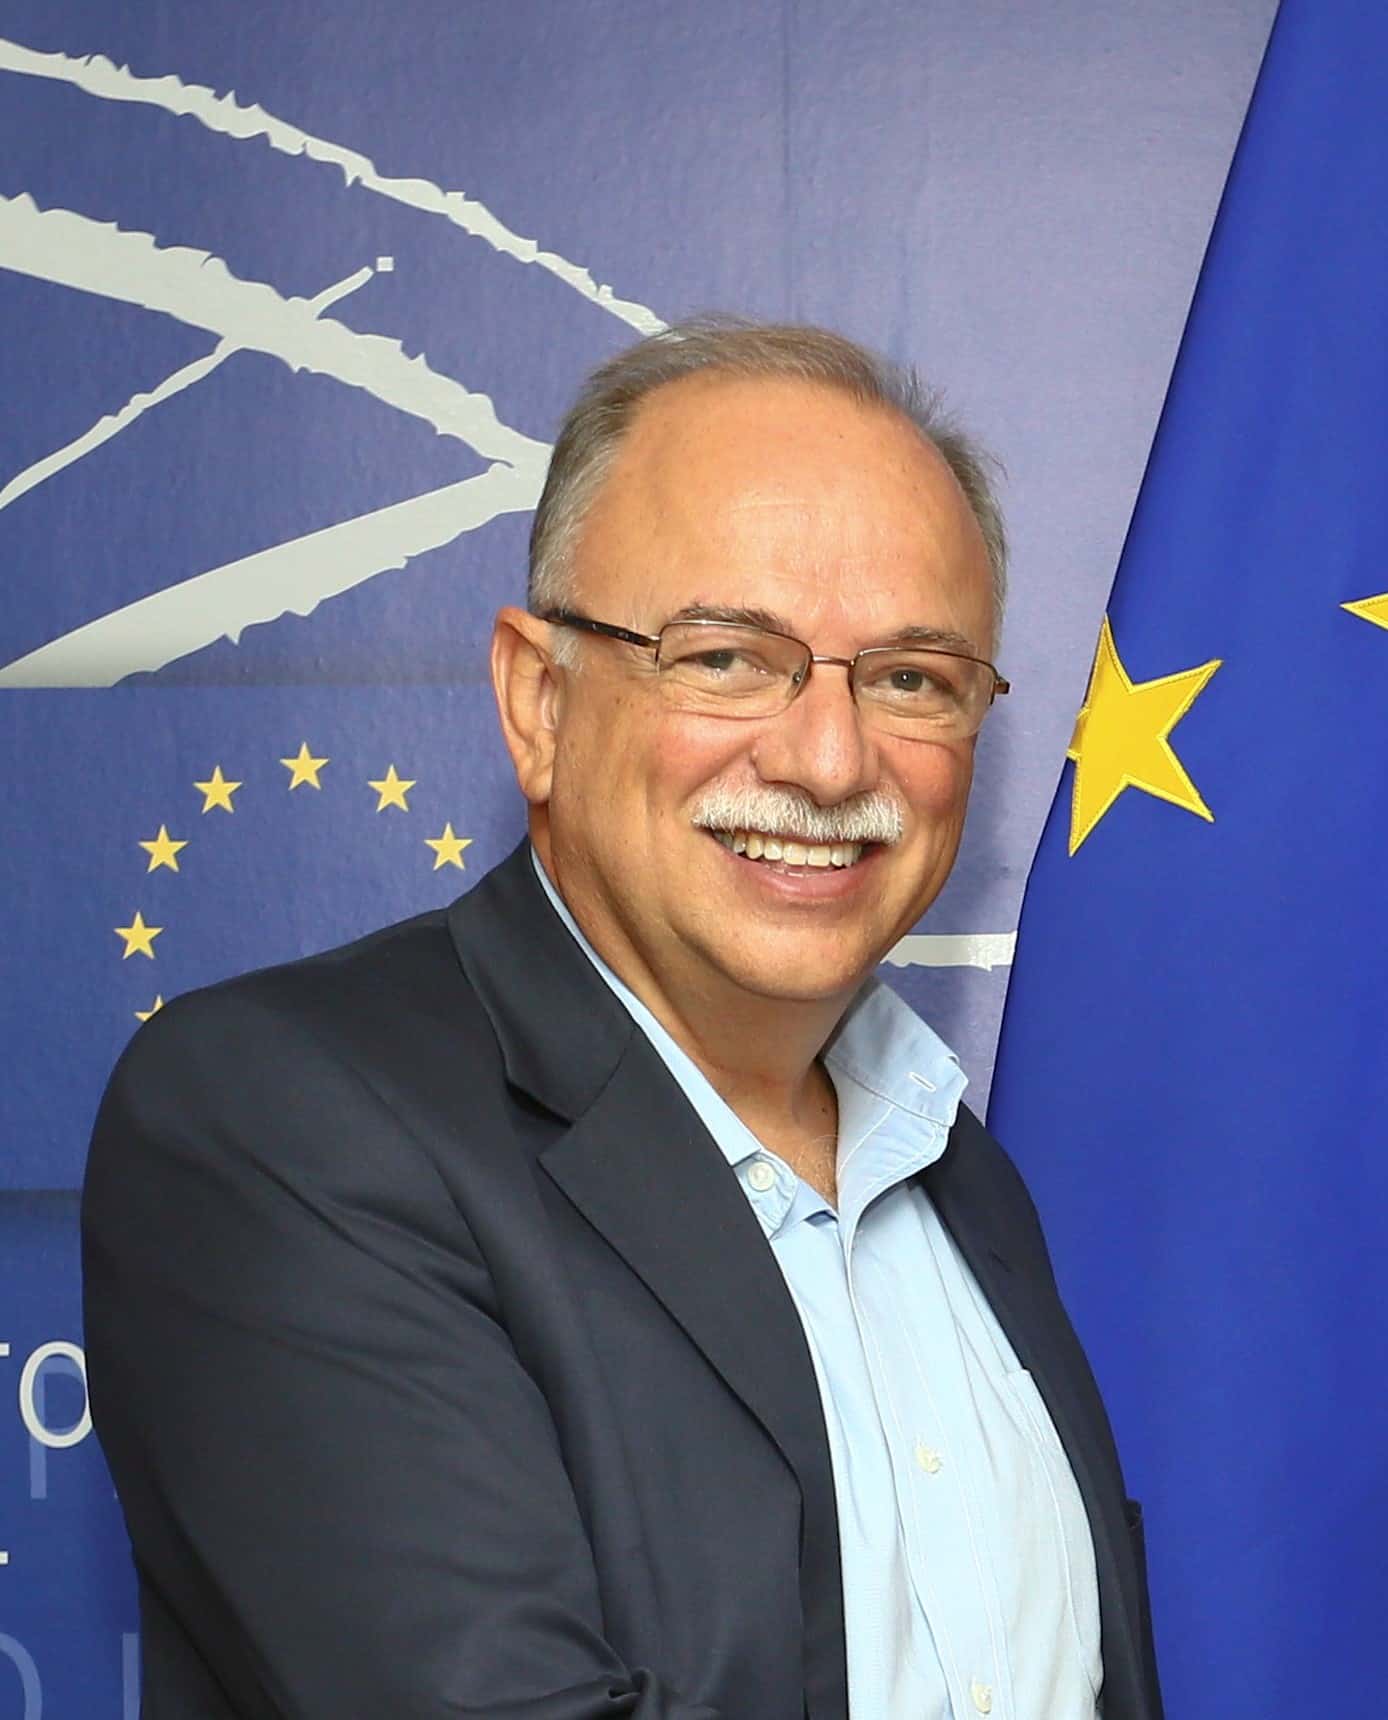 MEP Dimitros PAPADIMOULIS